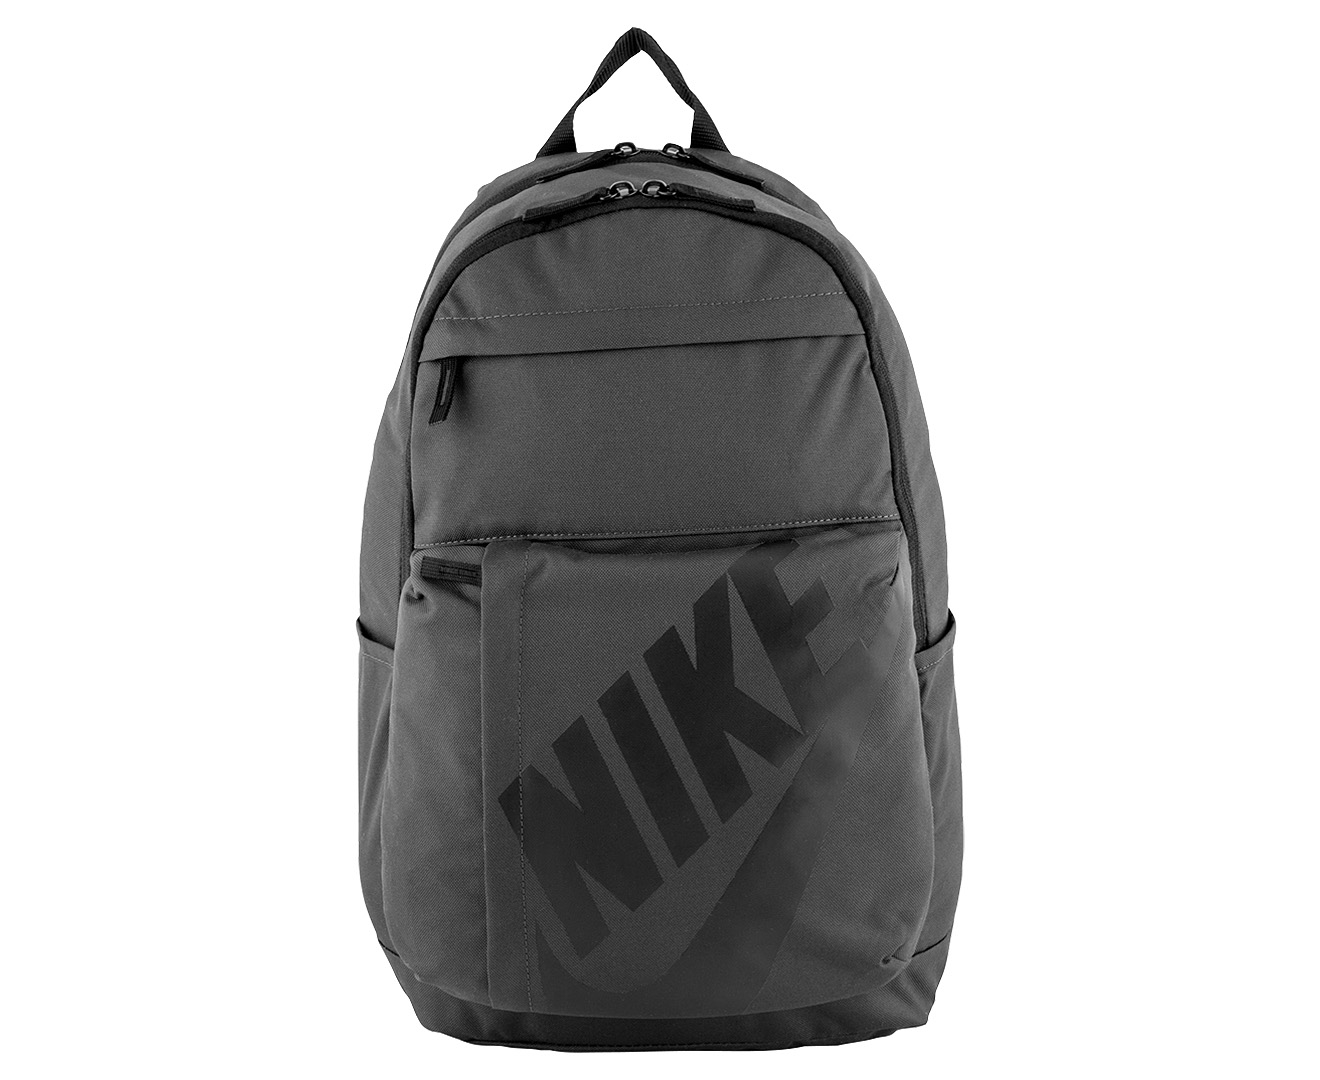 Element l. Рюкзак Nike element 2.0 LBR Backpack. Рюкзак Nike 25l af-1. Nike element серый рюкзак. Nike Elemental Dark Driftwood Backpack.